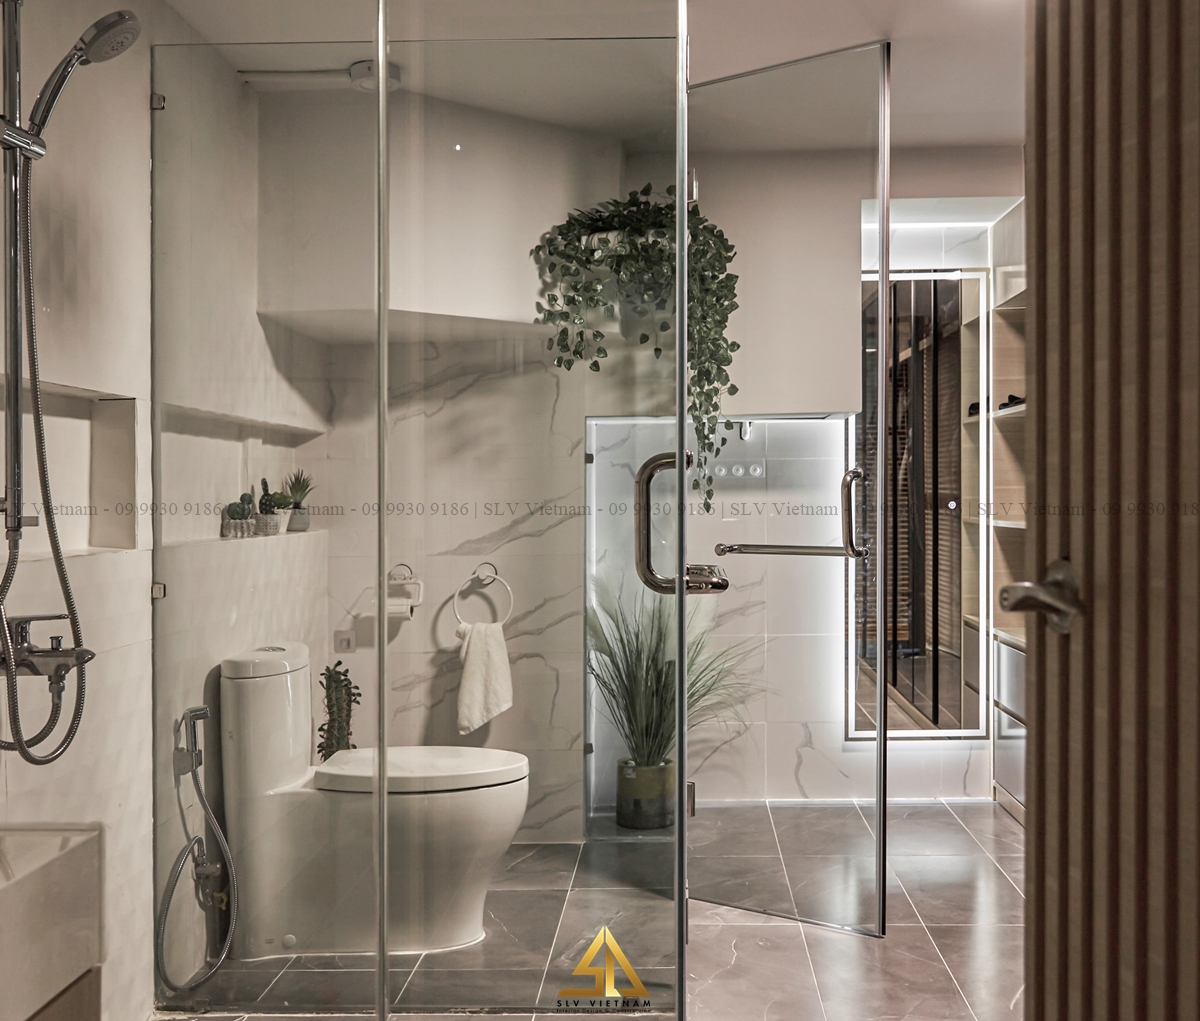 Phòng tắm bằng kính với các chi tiết trang trí đơn giản nhưng đầy tinh tế (Dự án của SLV Vietnam)